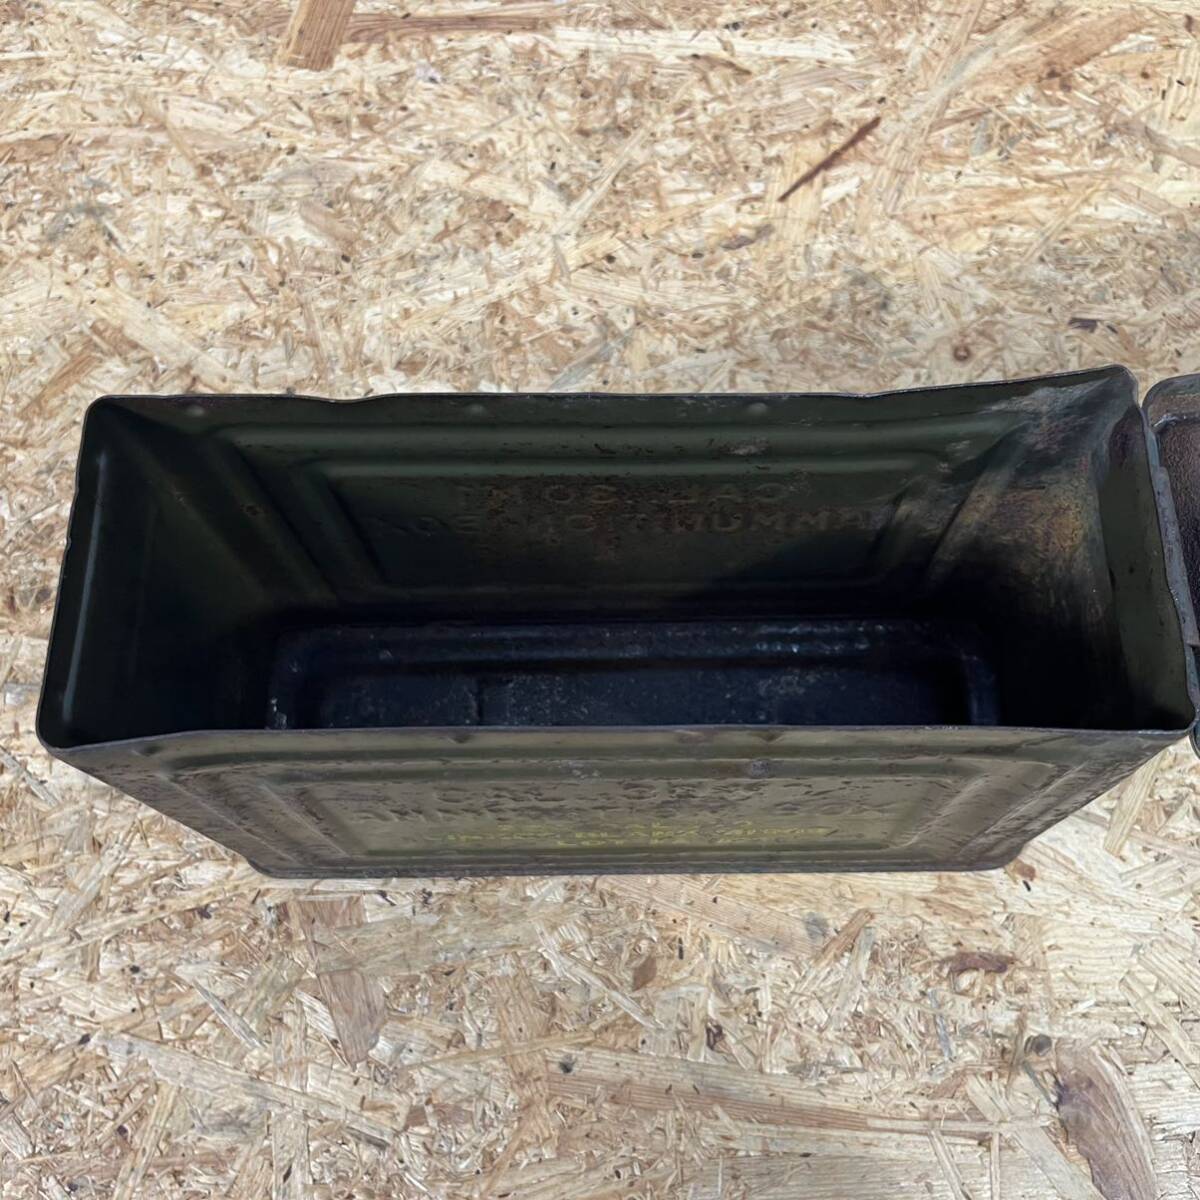 【骨董品】第2次大戦 米軍金属製弾薬箱 Cal.30 M1 AMMUNITION BOX アーモボックス US REEVESミリタリー アンモボックス の画像7